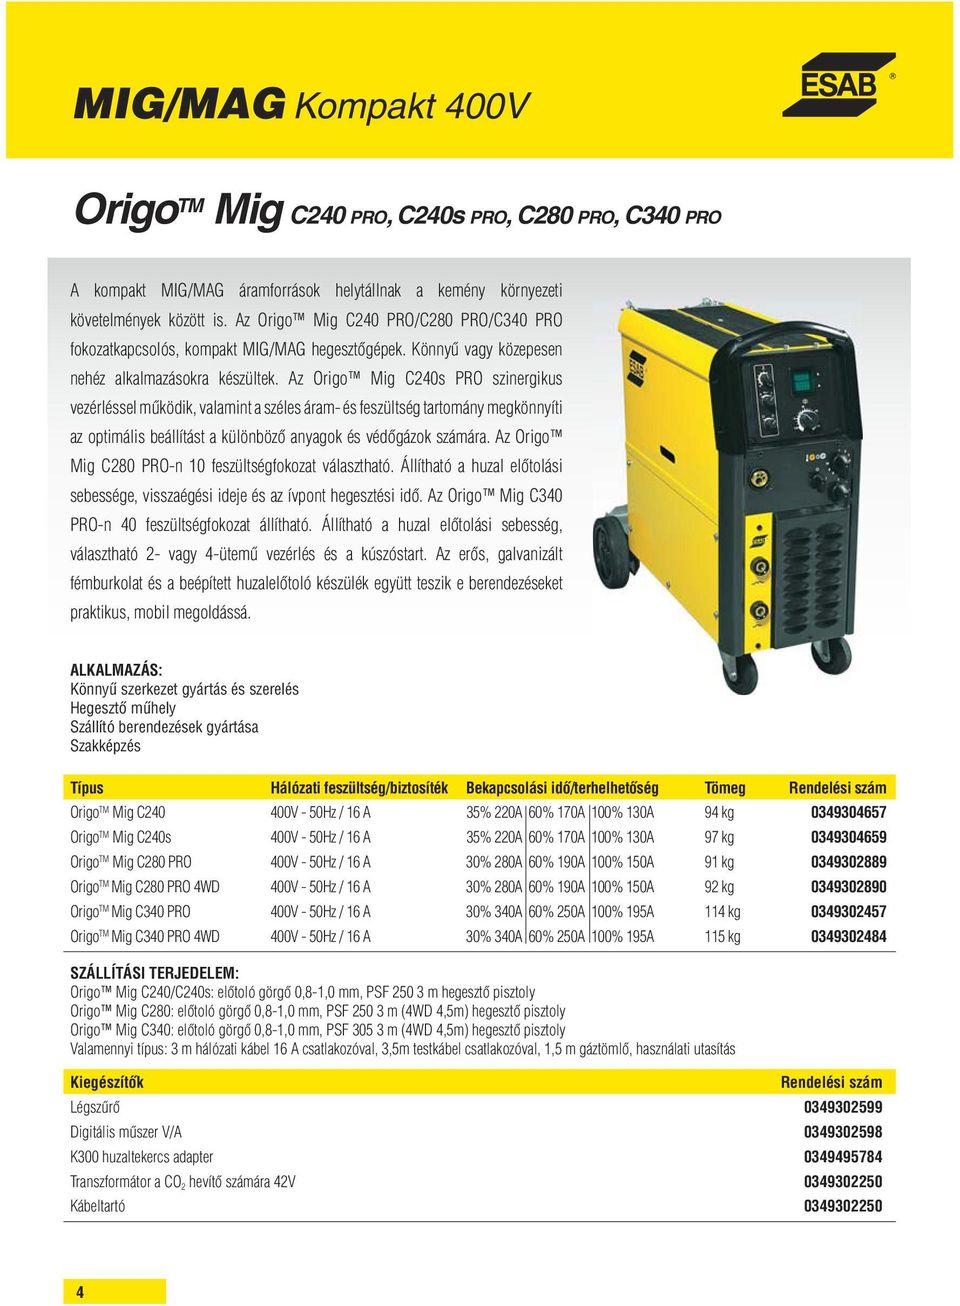 Az Origo Mig C240s PRO szinergikus vezérléssel működik, valamint a széles áram- és feszültség tartomány megkönnyíti az optimális beállítást a különböző anyagok és védőgázok számára.